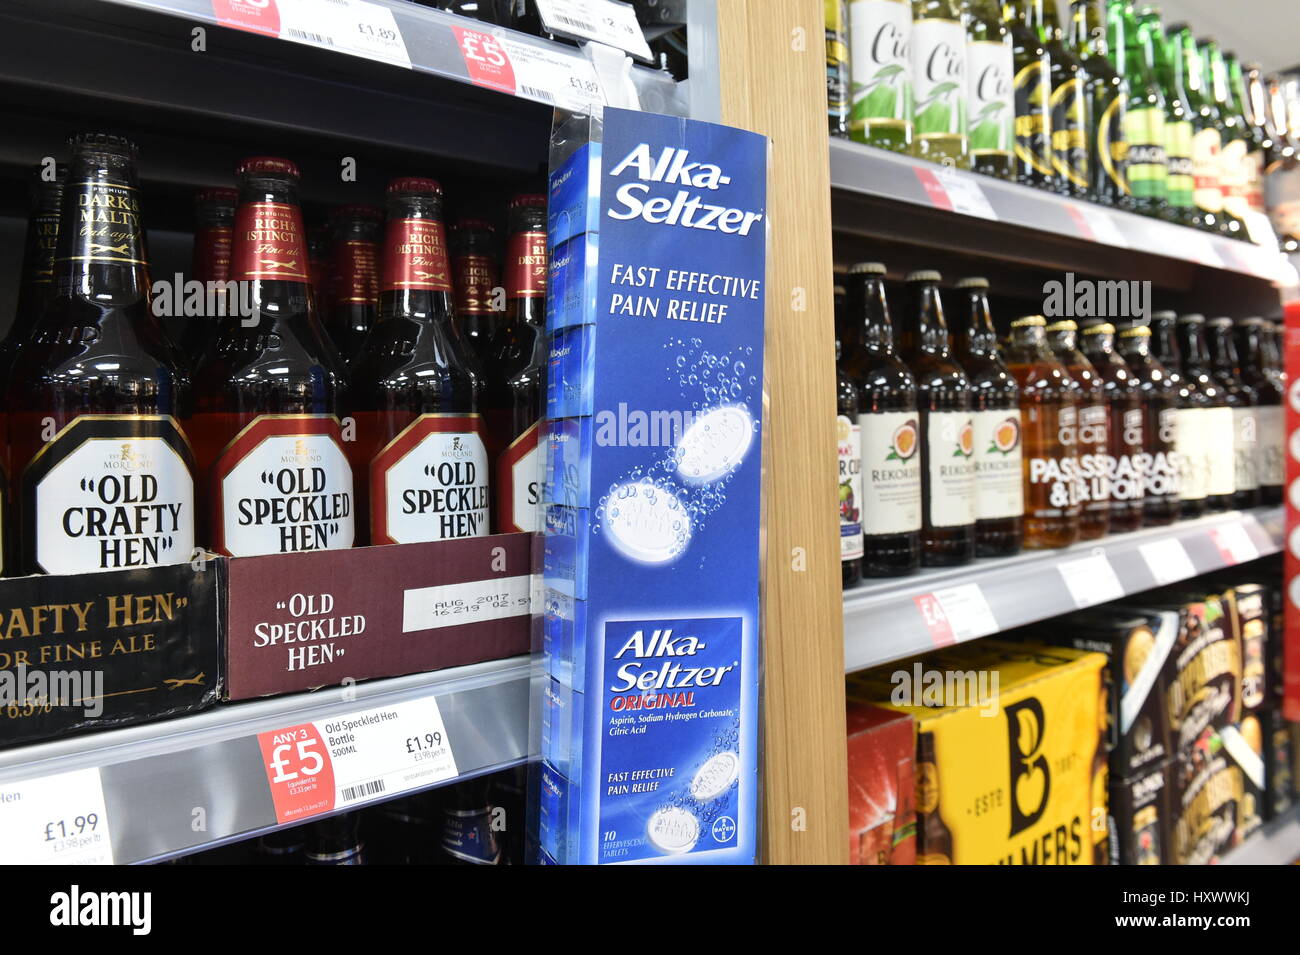 Bière et alka selzter en vente en supermarché Aldi excès de Noël Banque D'Images